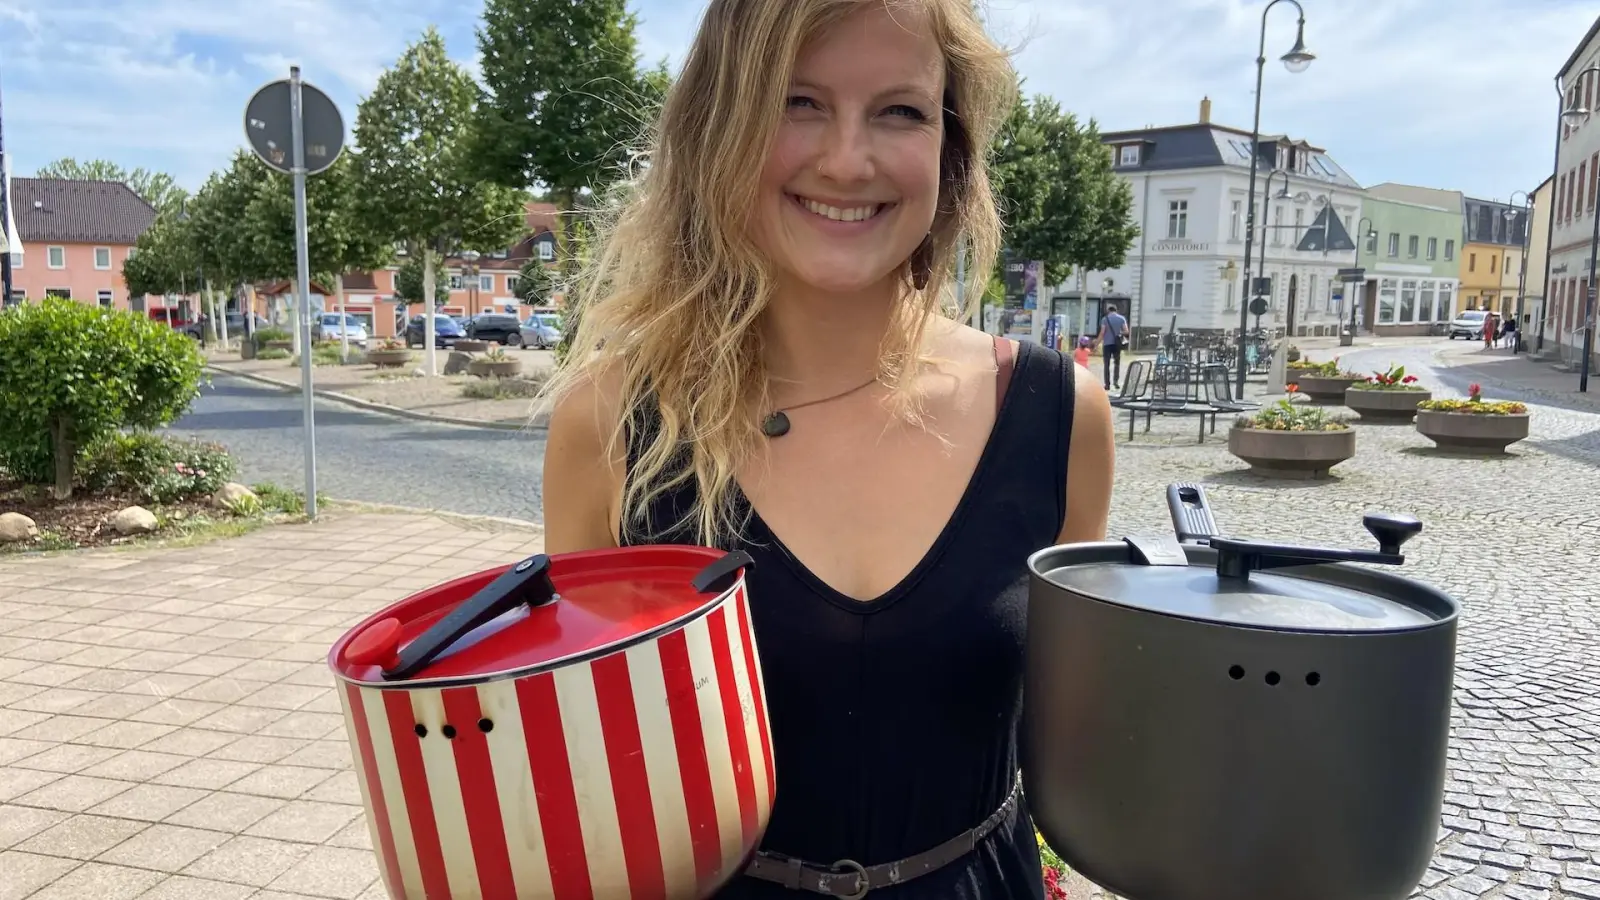 Denise Landmann startet jetzt das Crowdfunding für einen eigenen Popcorntopf, ähnlich wie diesen beiden im Foto. (Foto: taucha-kompakt.de)